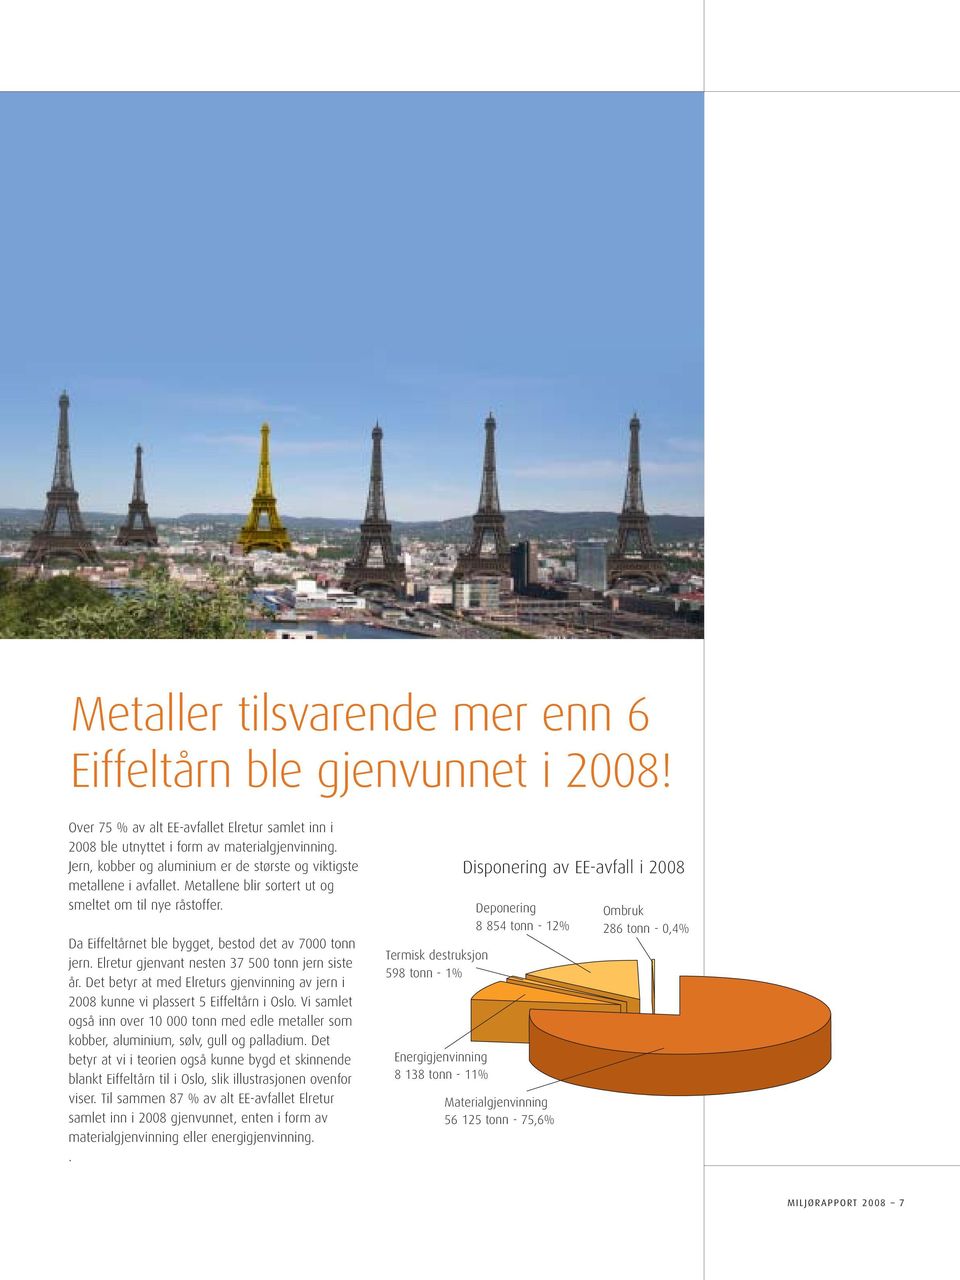 Elretur gjenvant nesten 37 500 tonn jern siste år. Det betyr at med Elreturs gjenvinning av jern i 2008 kunne vi plassert 5 Eiffeltårn i Oslo.